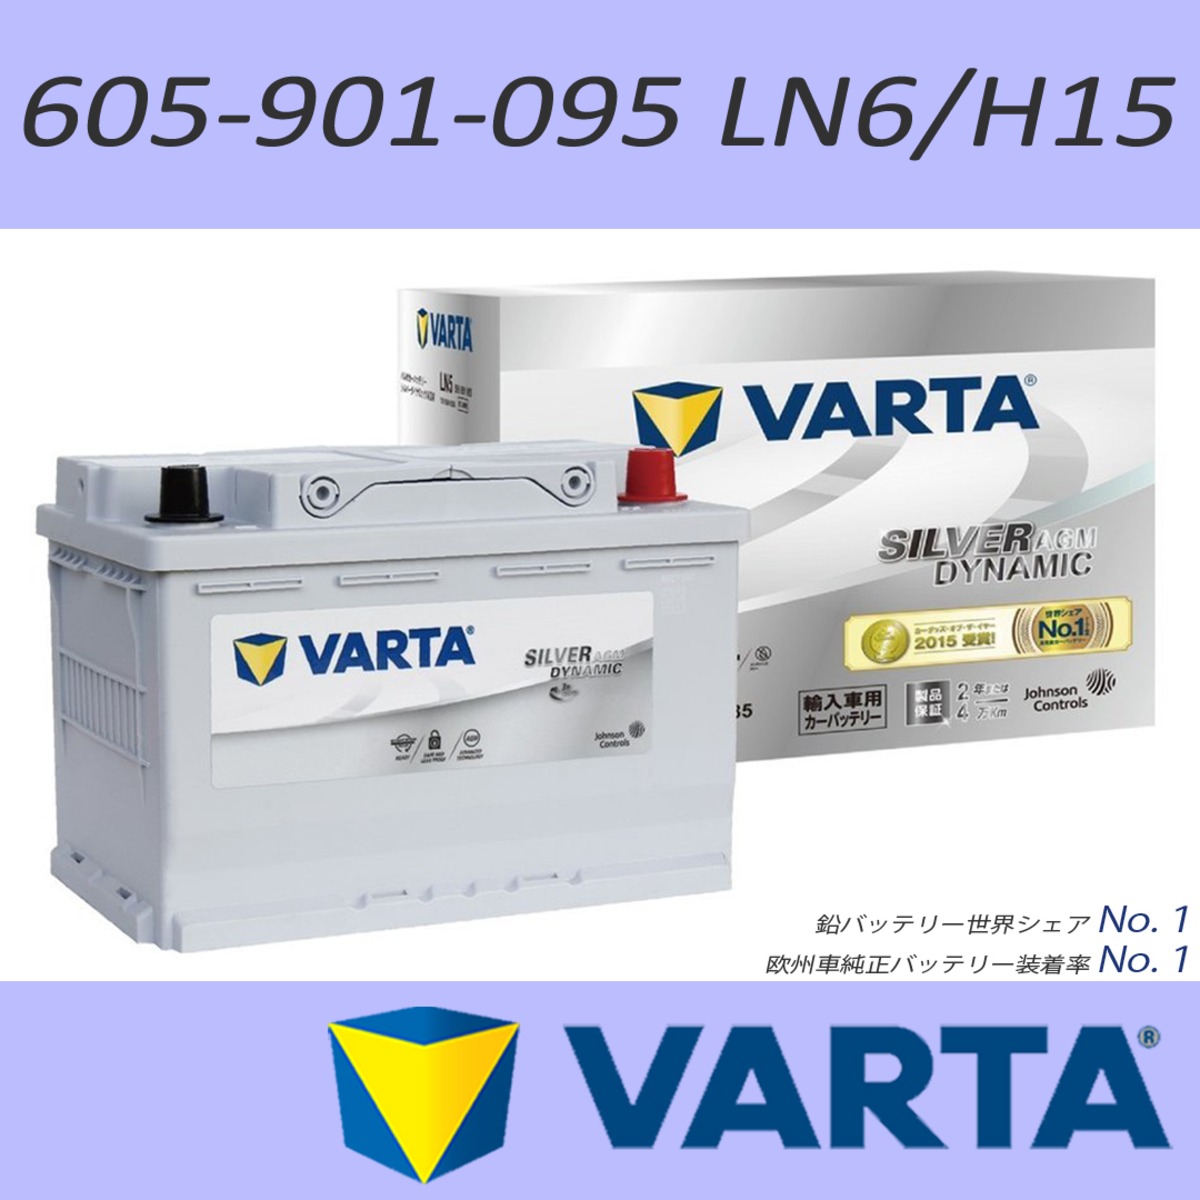 VARTA 605-901-095(LN6/AGM/H15) 105Ah SILVER AGM DYNAMIC | ANKGLID Power  (アングリッドパワー) powered by BASE